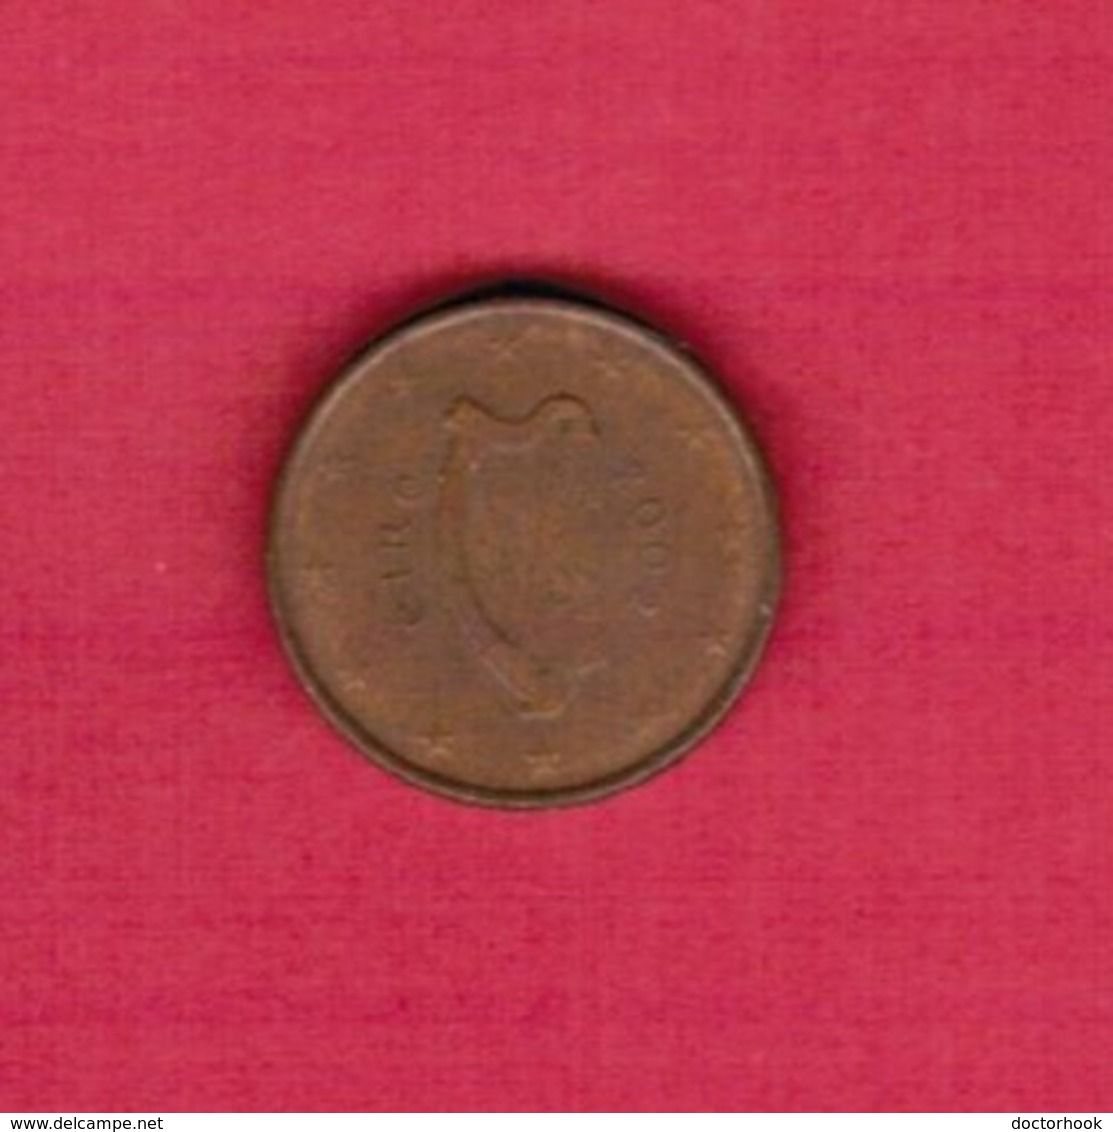 IRELAND   1 EURO CENT 2002 (KM # 32) #5225 - Irland